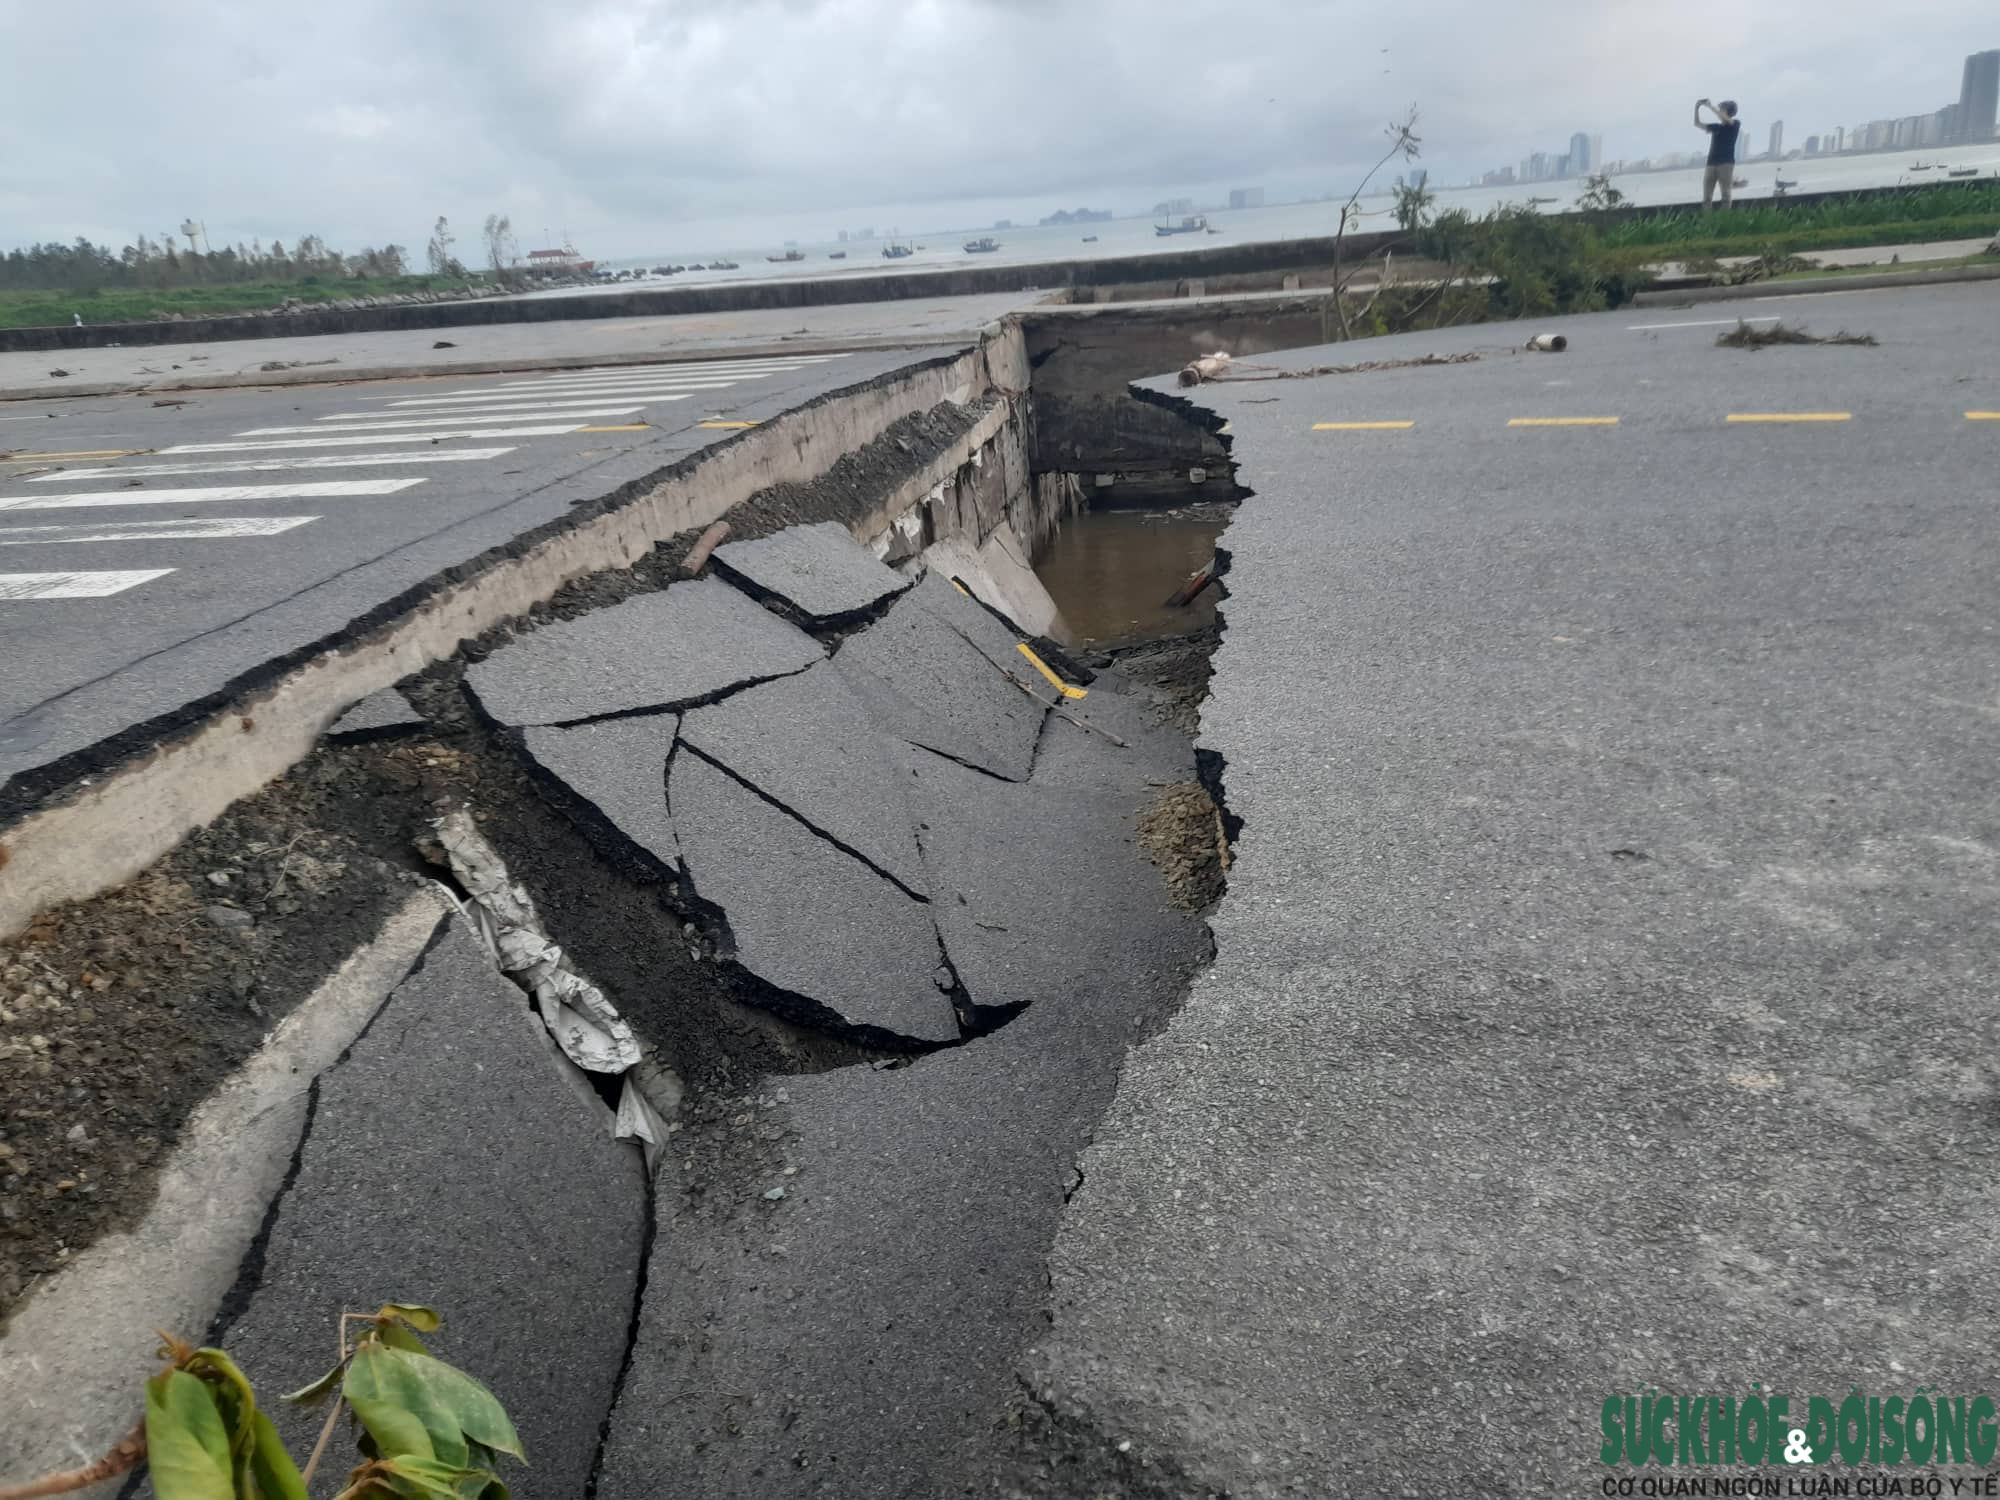 Bán đảo Sơn Trà bị sạt lở nặng sau mưa lũ, nhiều tuyến đường bị nứt toác - Ảnh 6.